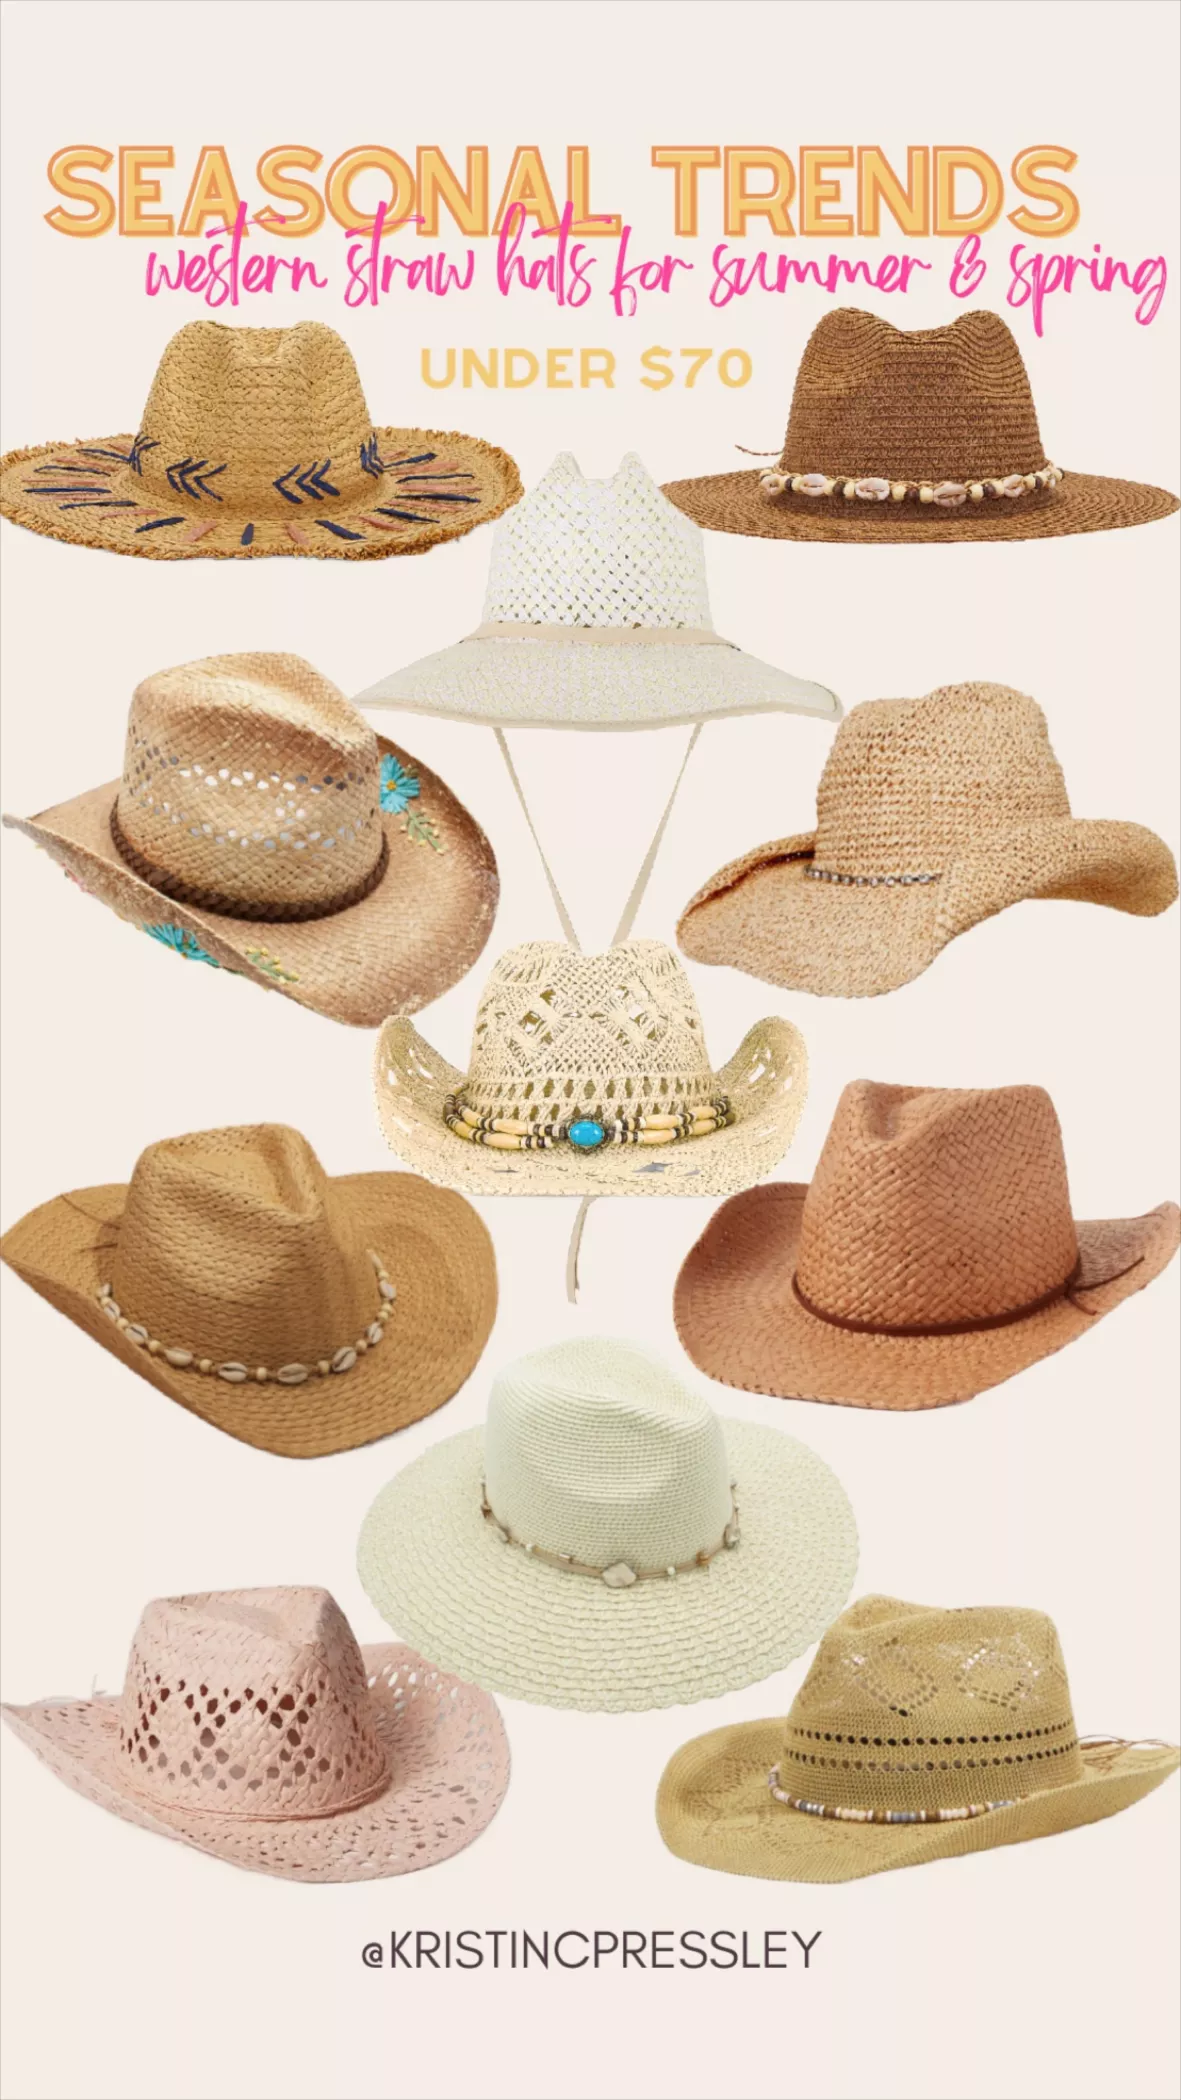 Dakota Straw Cowboy Hat curated on LTK